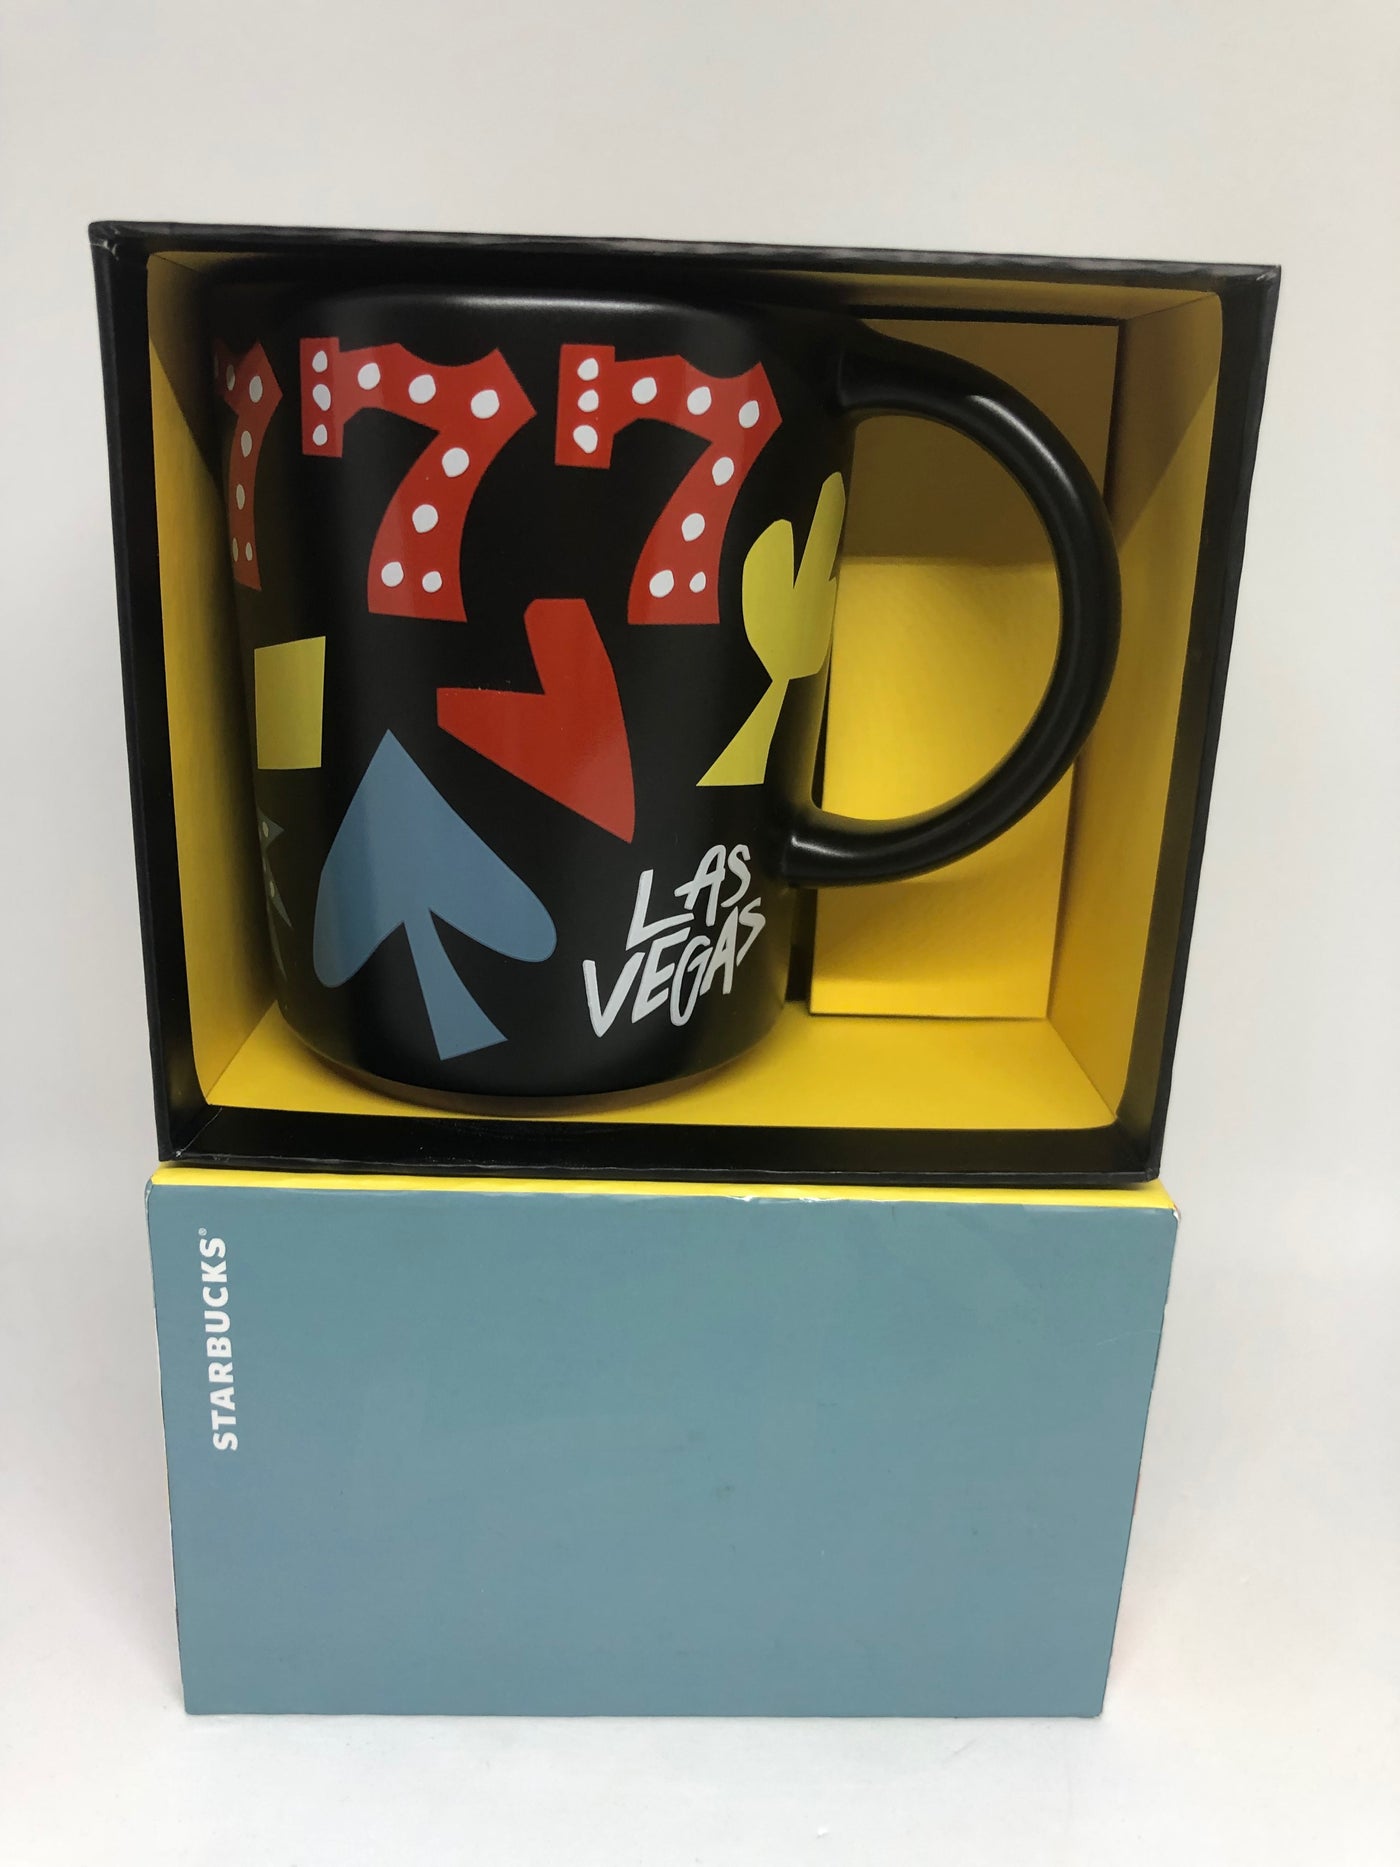 Starbucks Las Vegas Lucky 777 Black Ceramic Coffee Mug New with Box